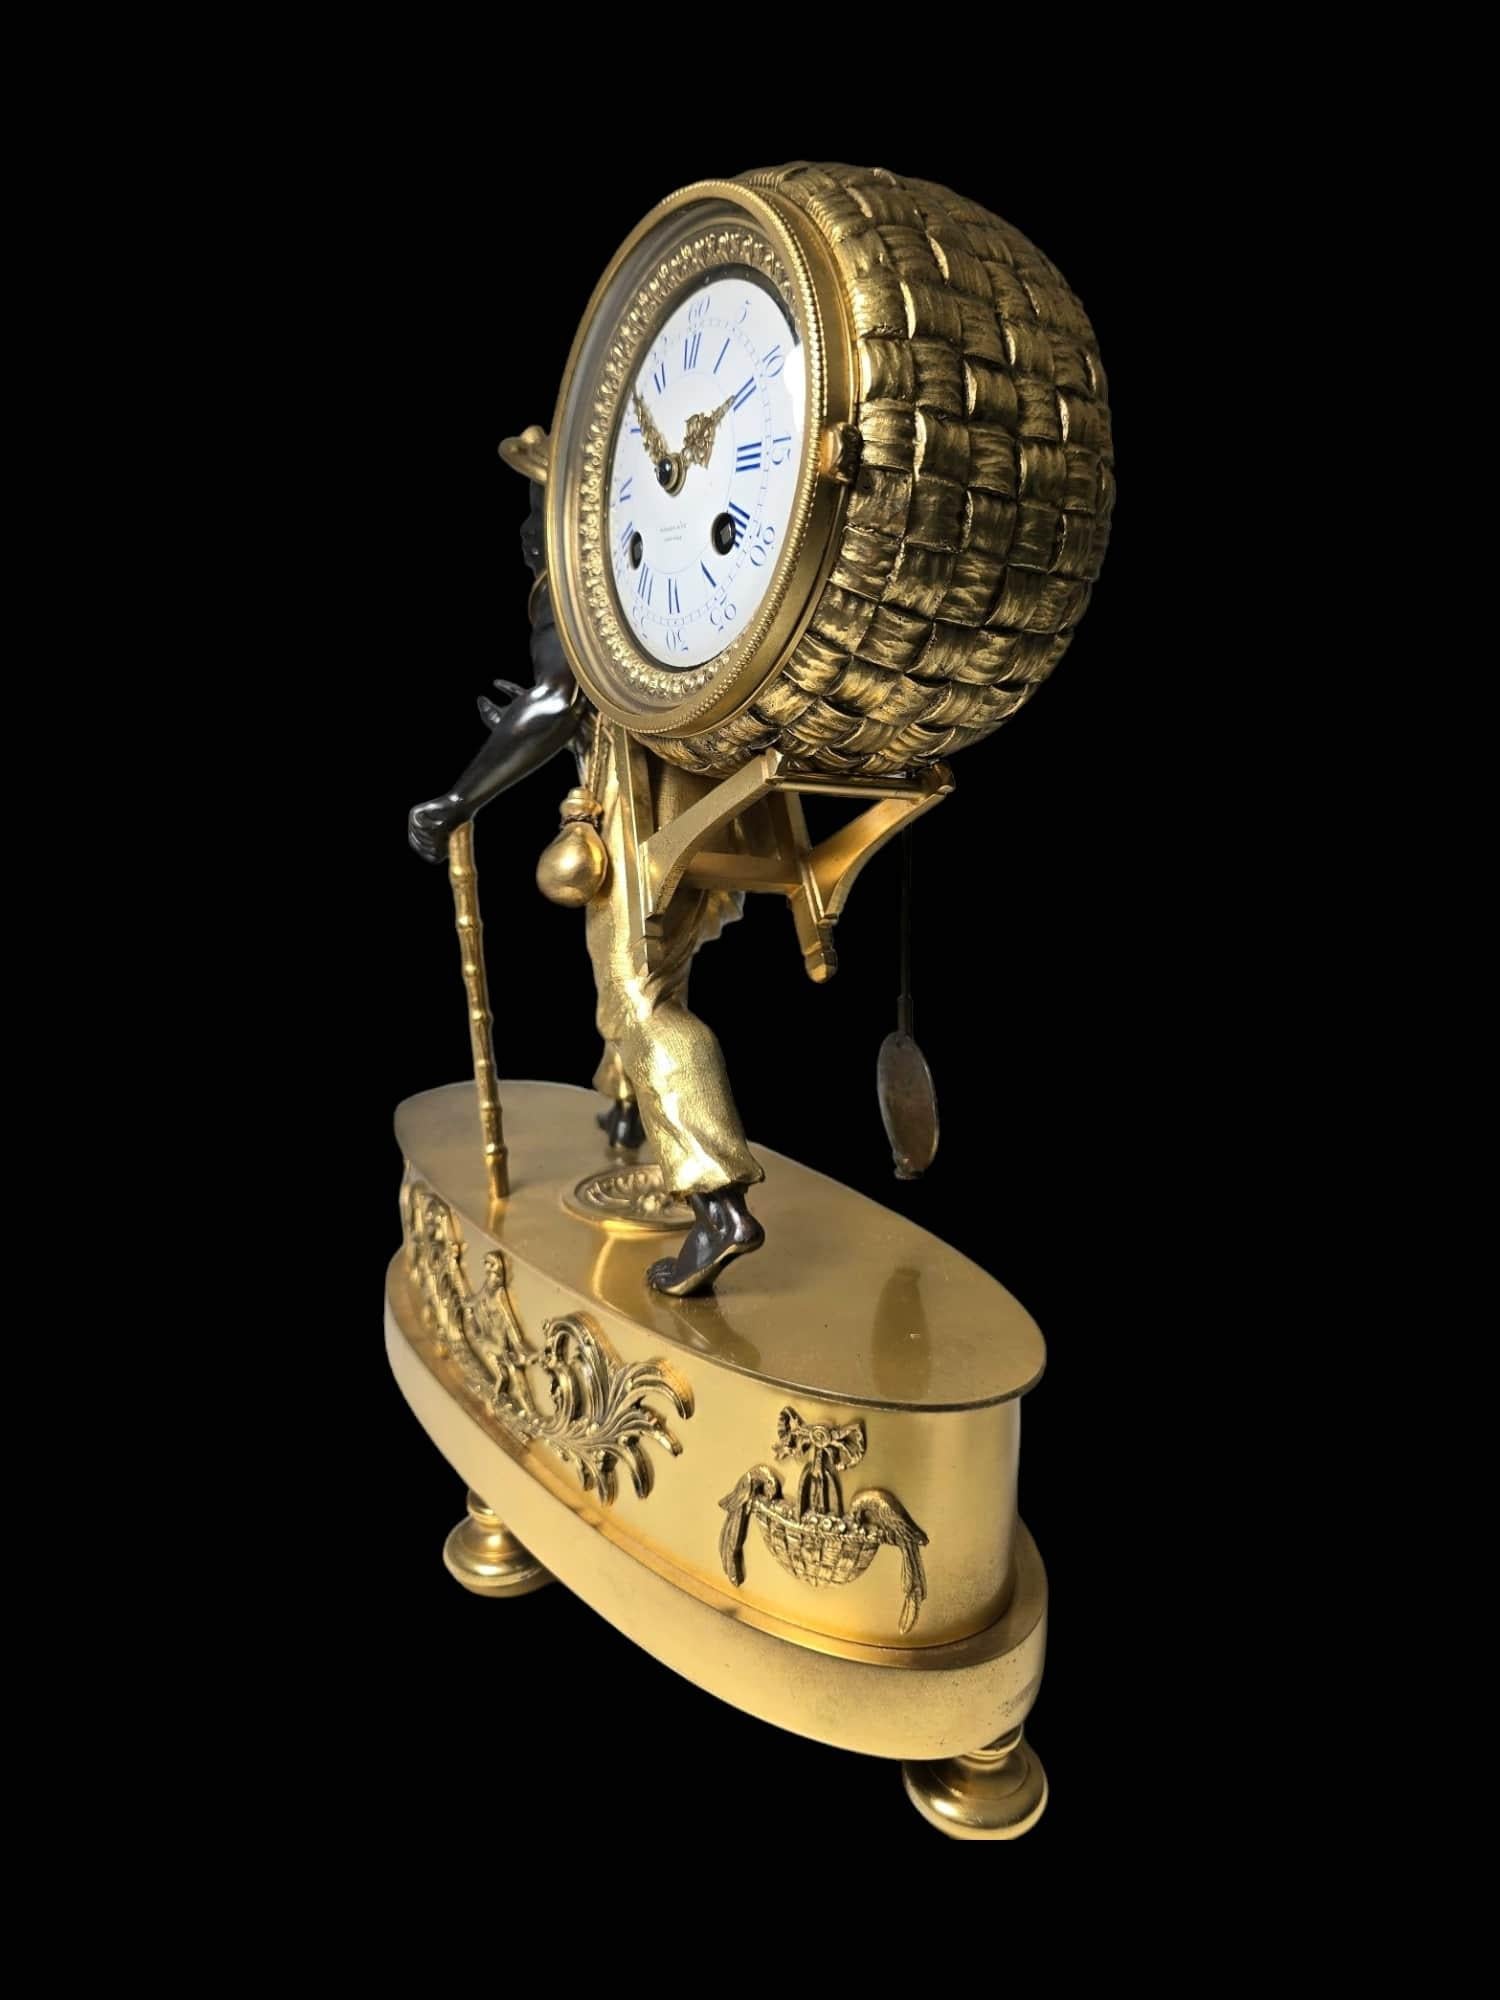 Tiffany&Co Mantel Clock “Le Portefaix” After Design By Jean-André Reiche For Sale 1